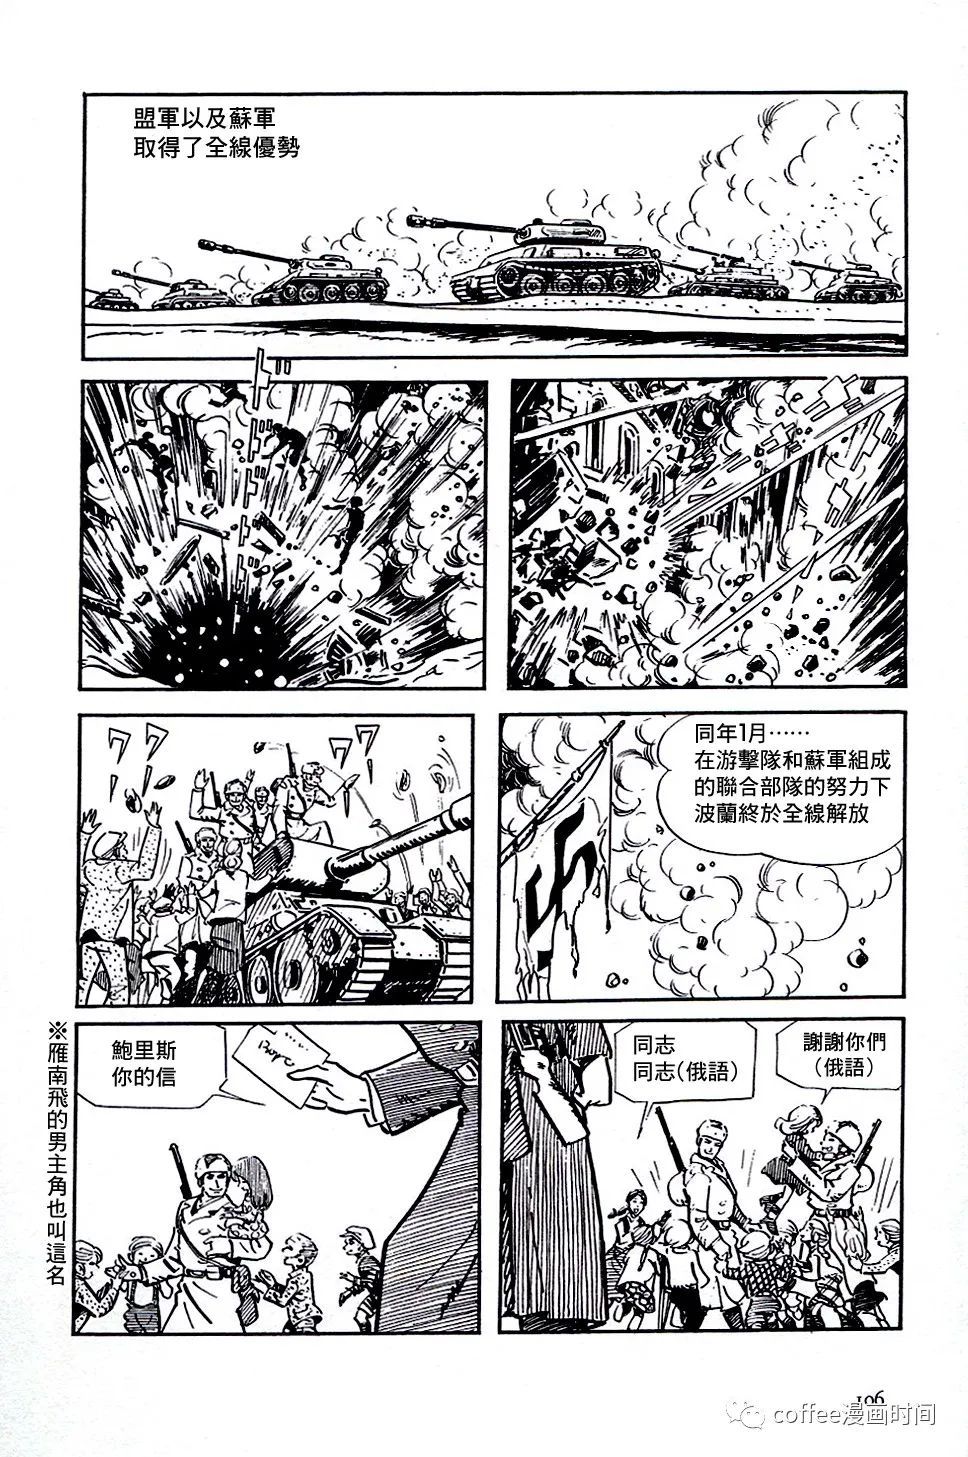 日本短篇漫畫傑作集 - 白土三平《戰爭》 - 3